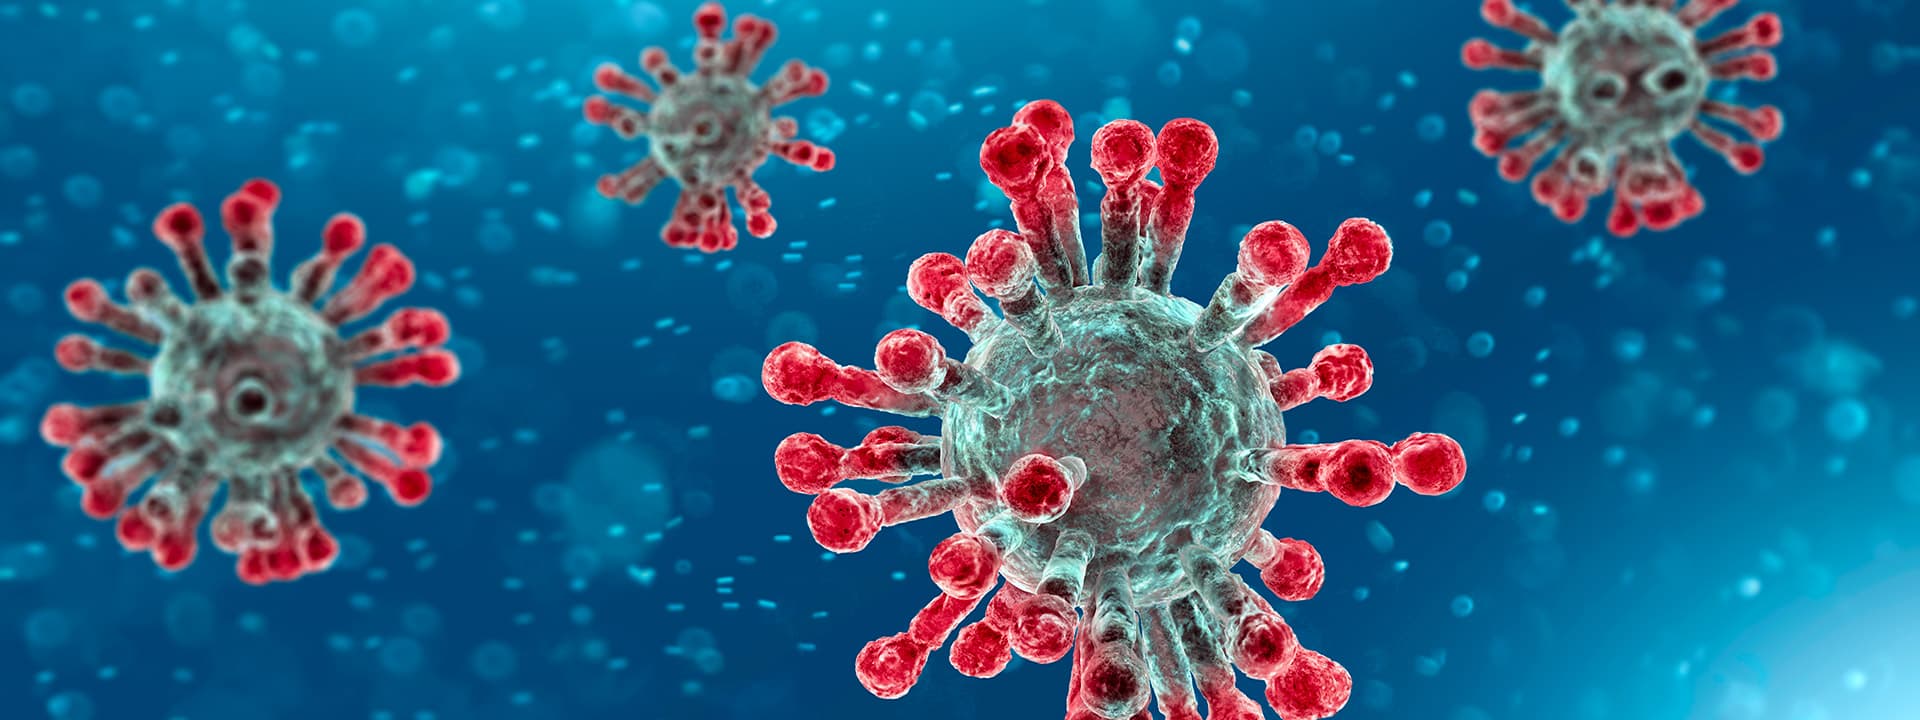 Microscopic view of coronavirus